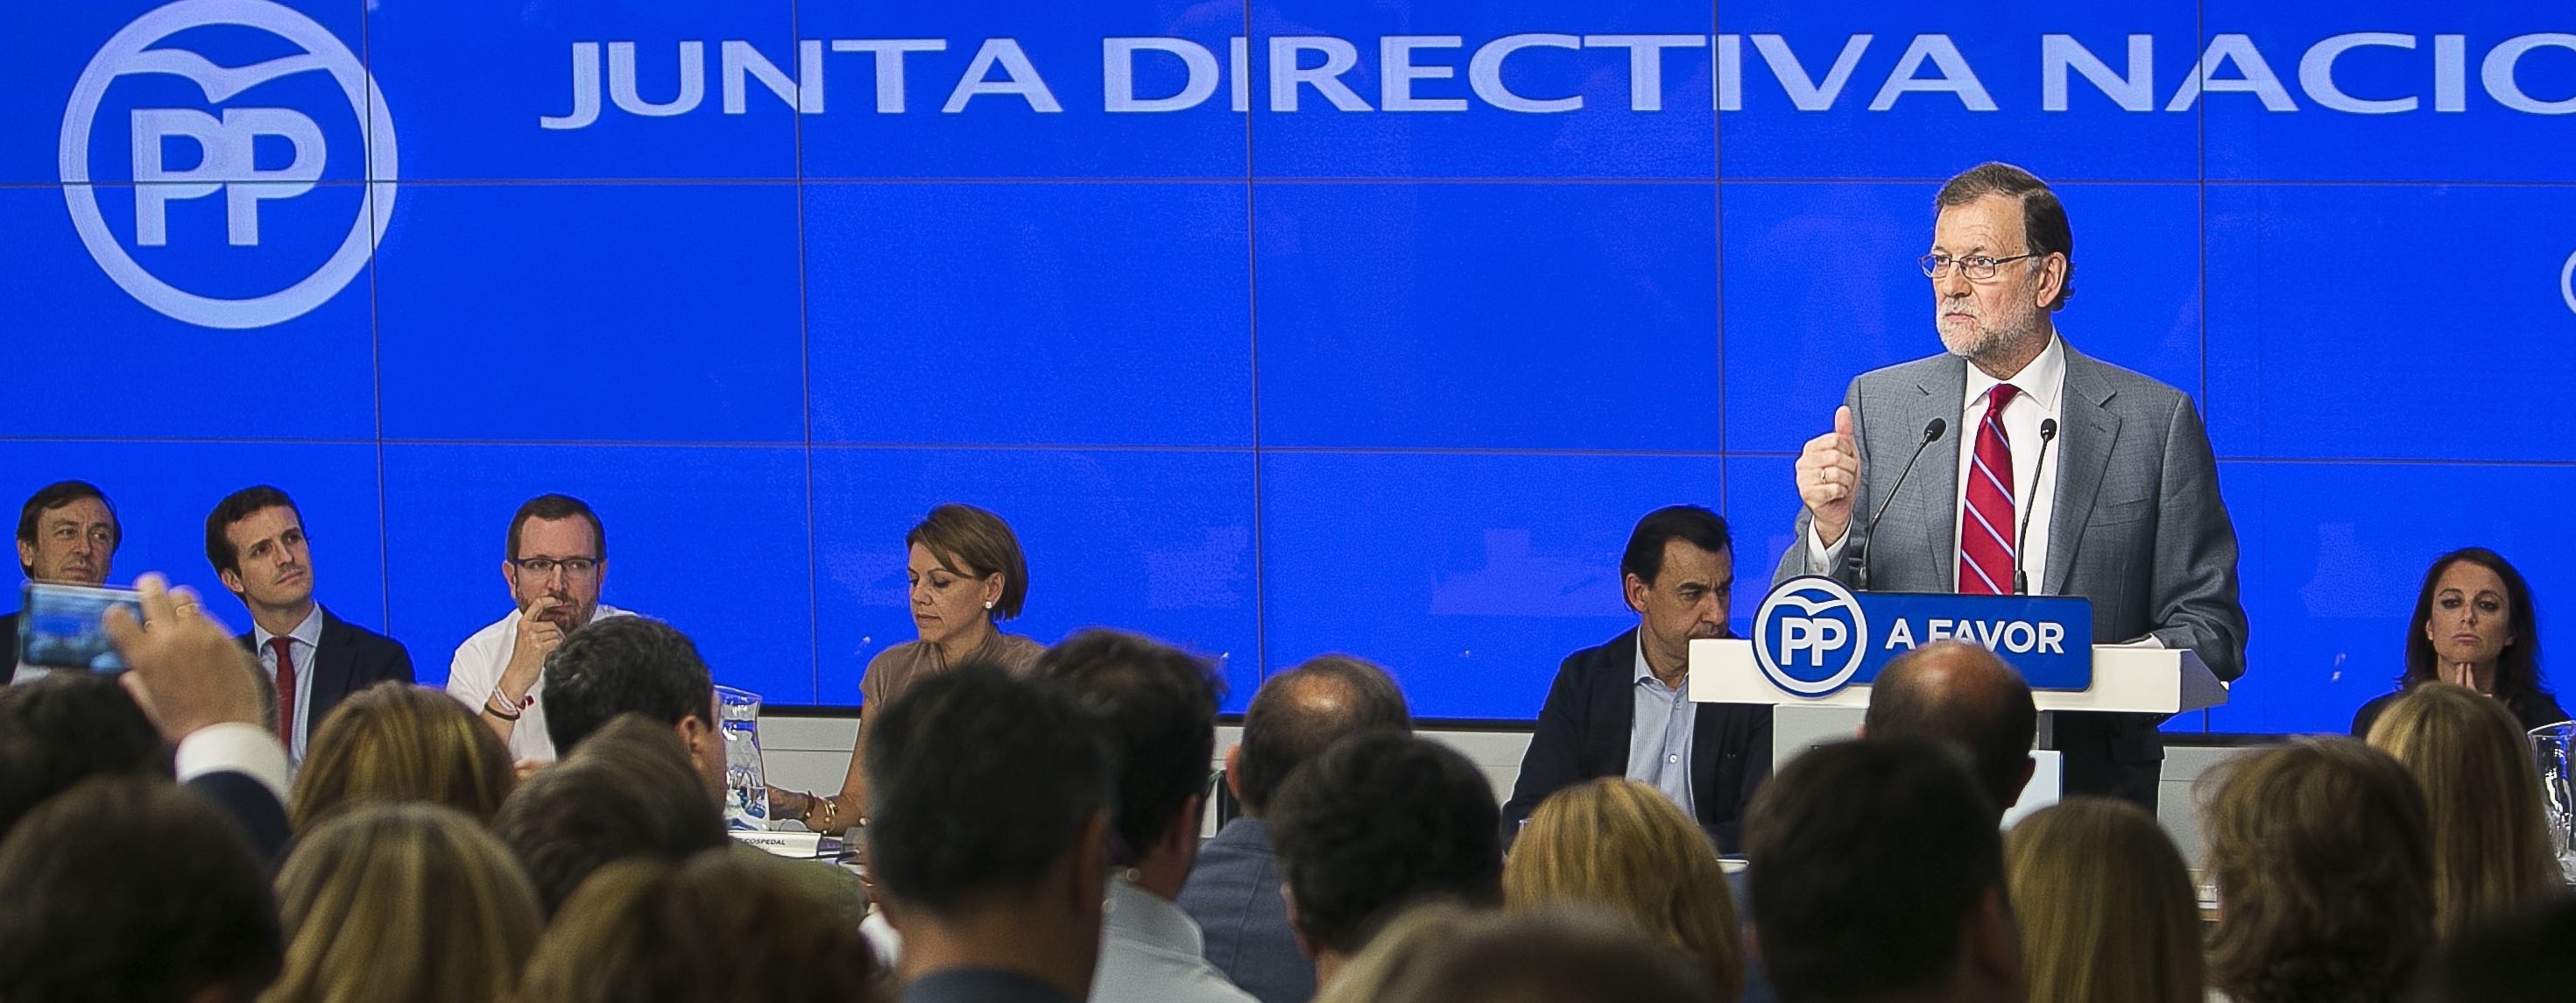 Rajoy presidiendo la Junta Directiva nacional del PP antes del inicio de la XII Legislatura